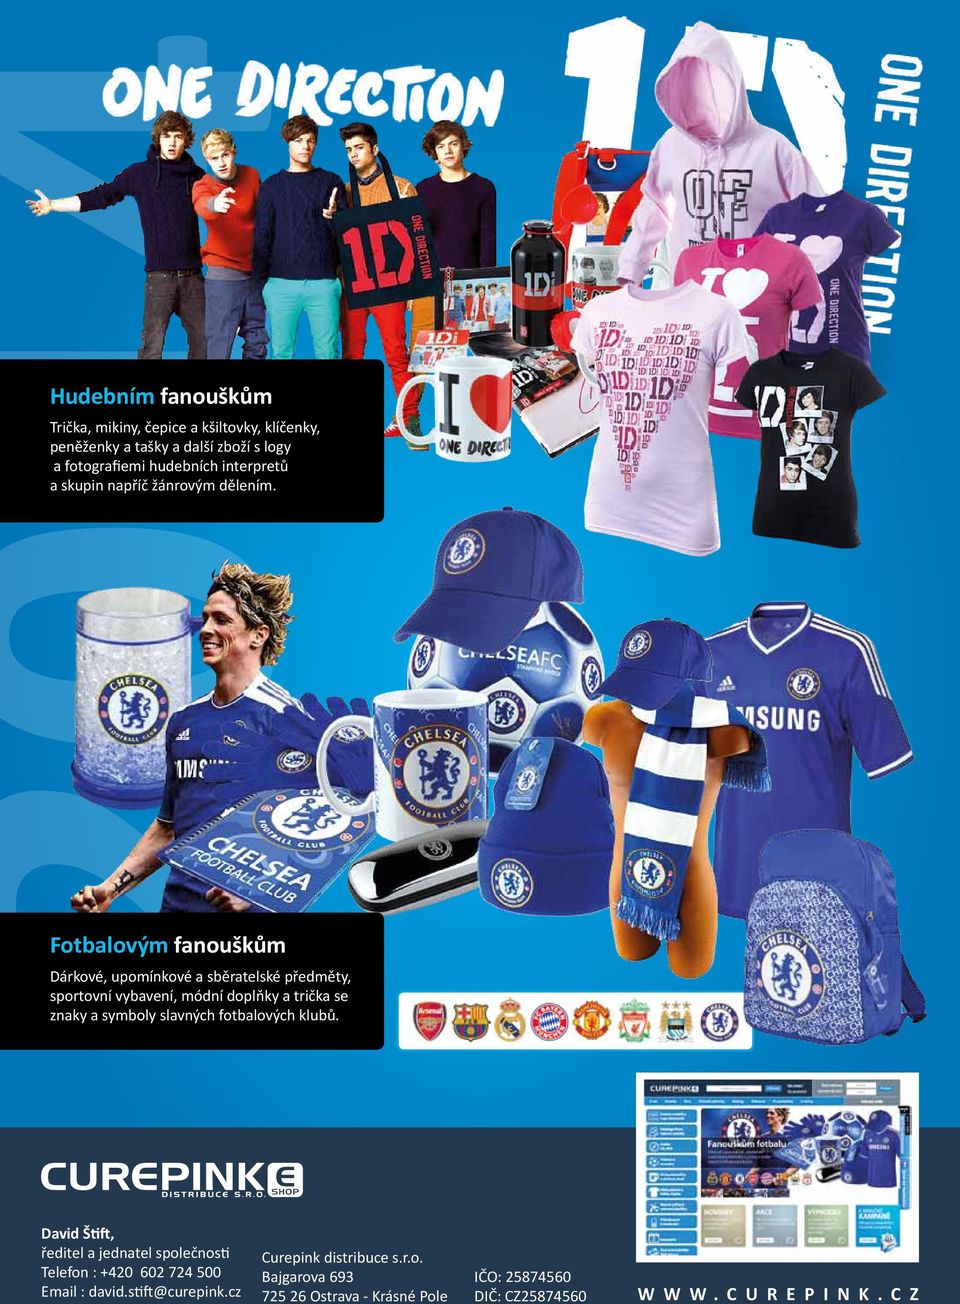 Fotbalovým fanouškům Dárkové, upomínkové a sběratelské předměty, sportovní vybavení, módní doplňky a trička se znaky a symboly slavných